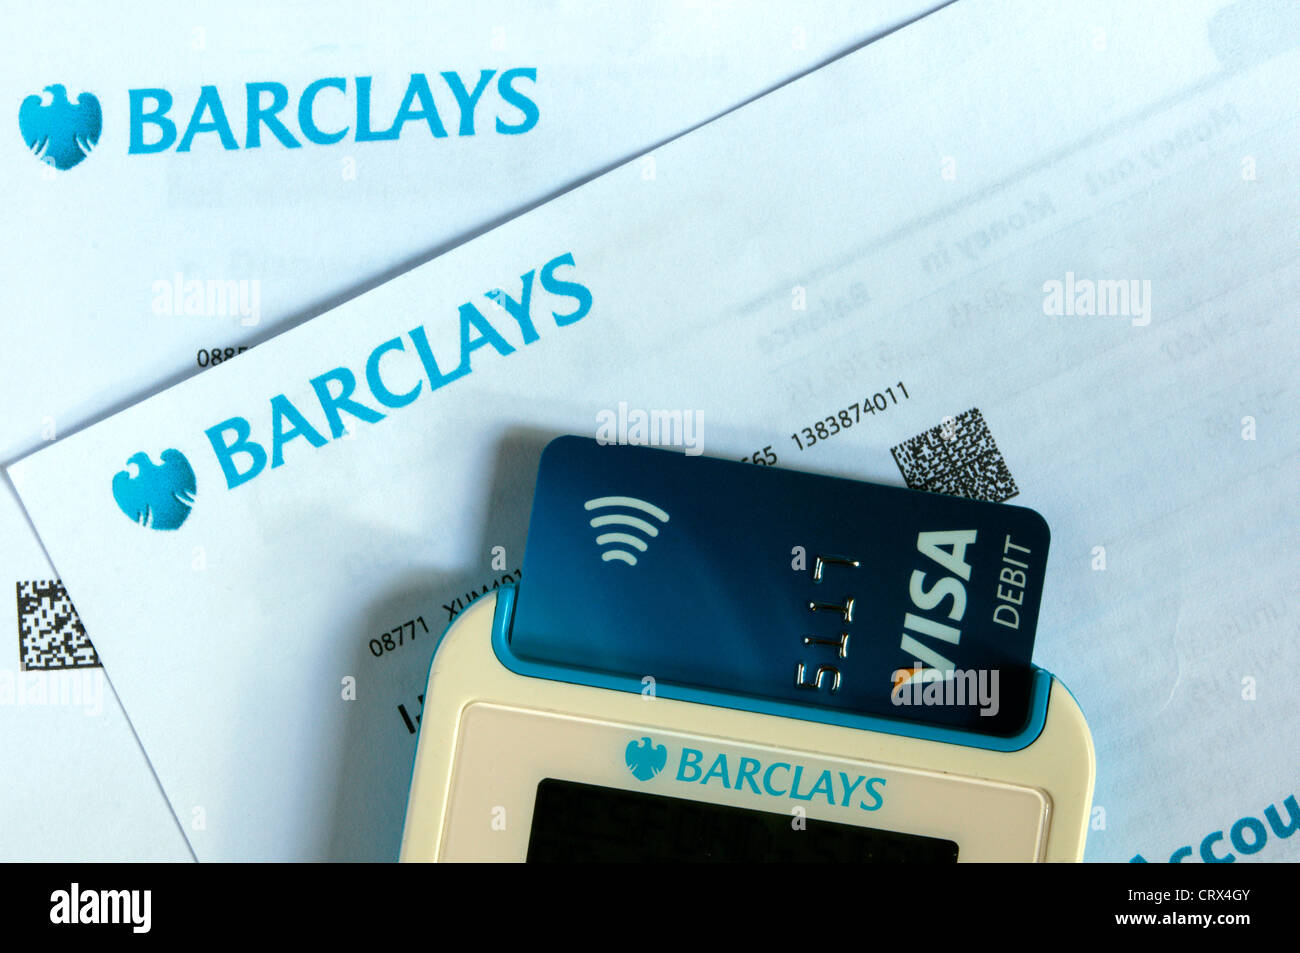 Un dispositif d'authentification par code Barclays PINsentry la lecture d'une carte à puce et code pin pour vérifier l'identité. Sur les déclarations de la banque Barclays. Banque D'Images